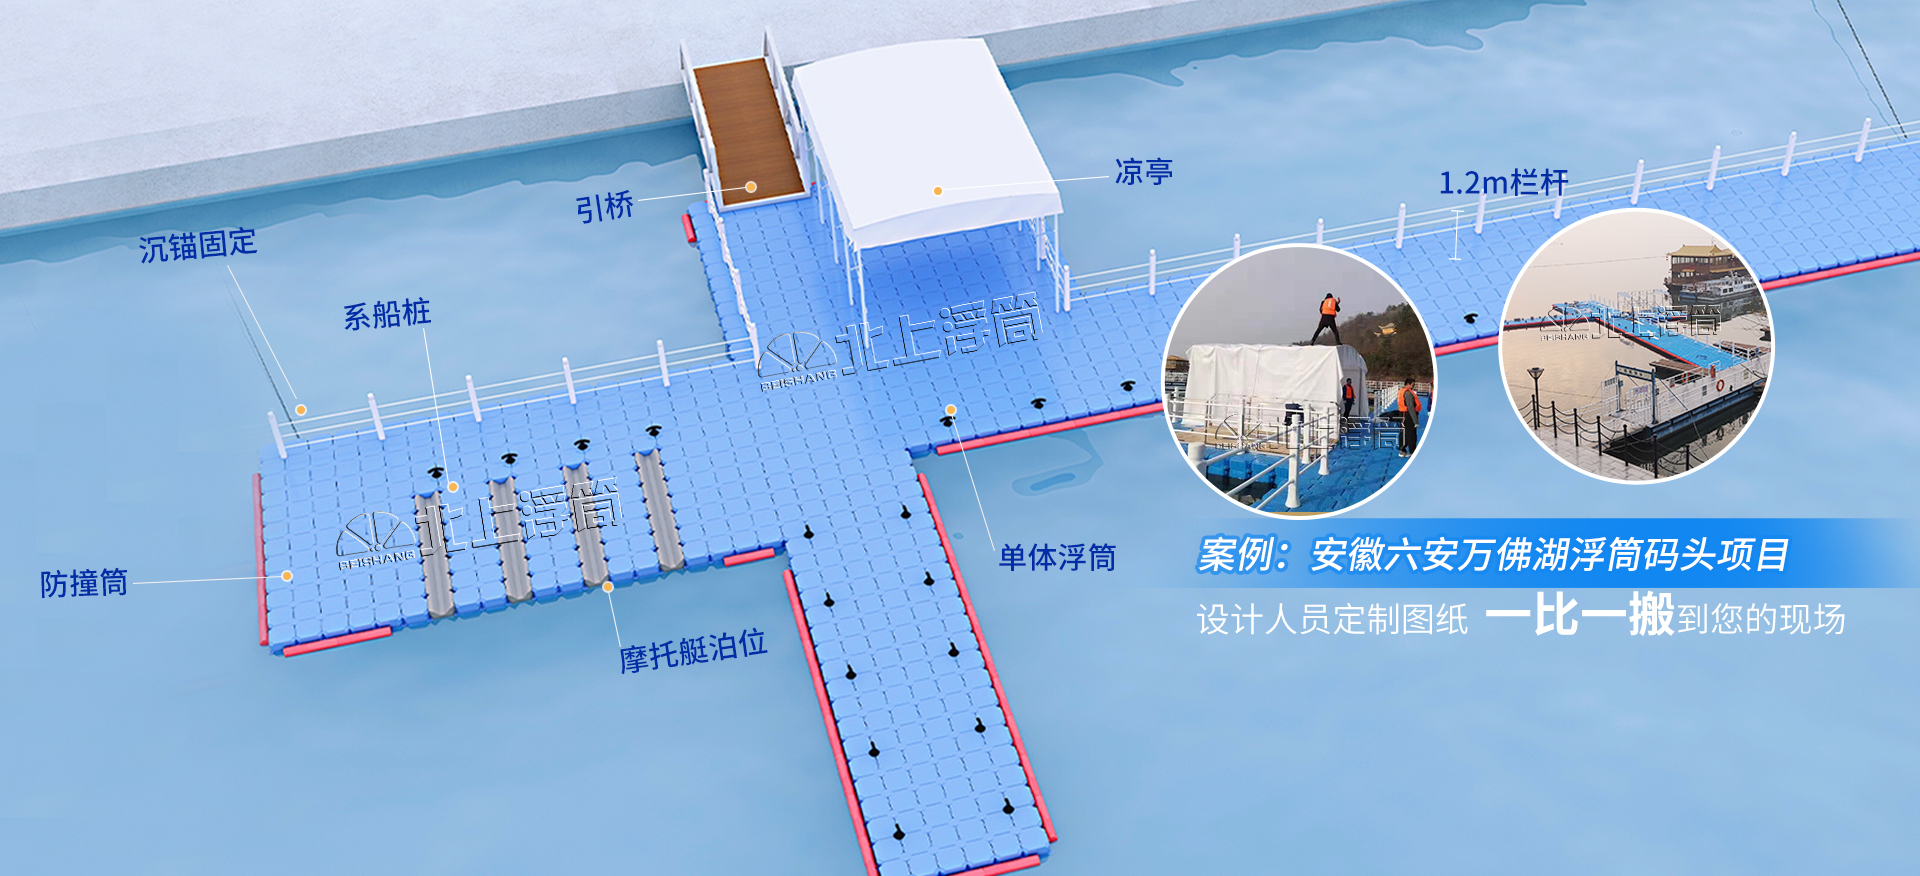 安徽六安万佛湖浮筒码头项目